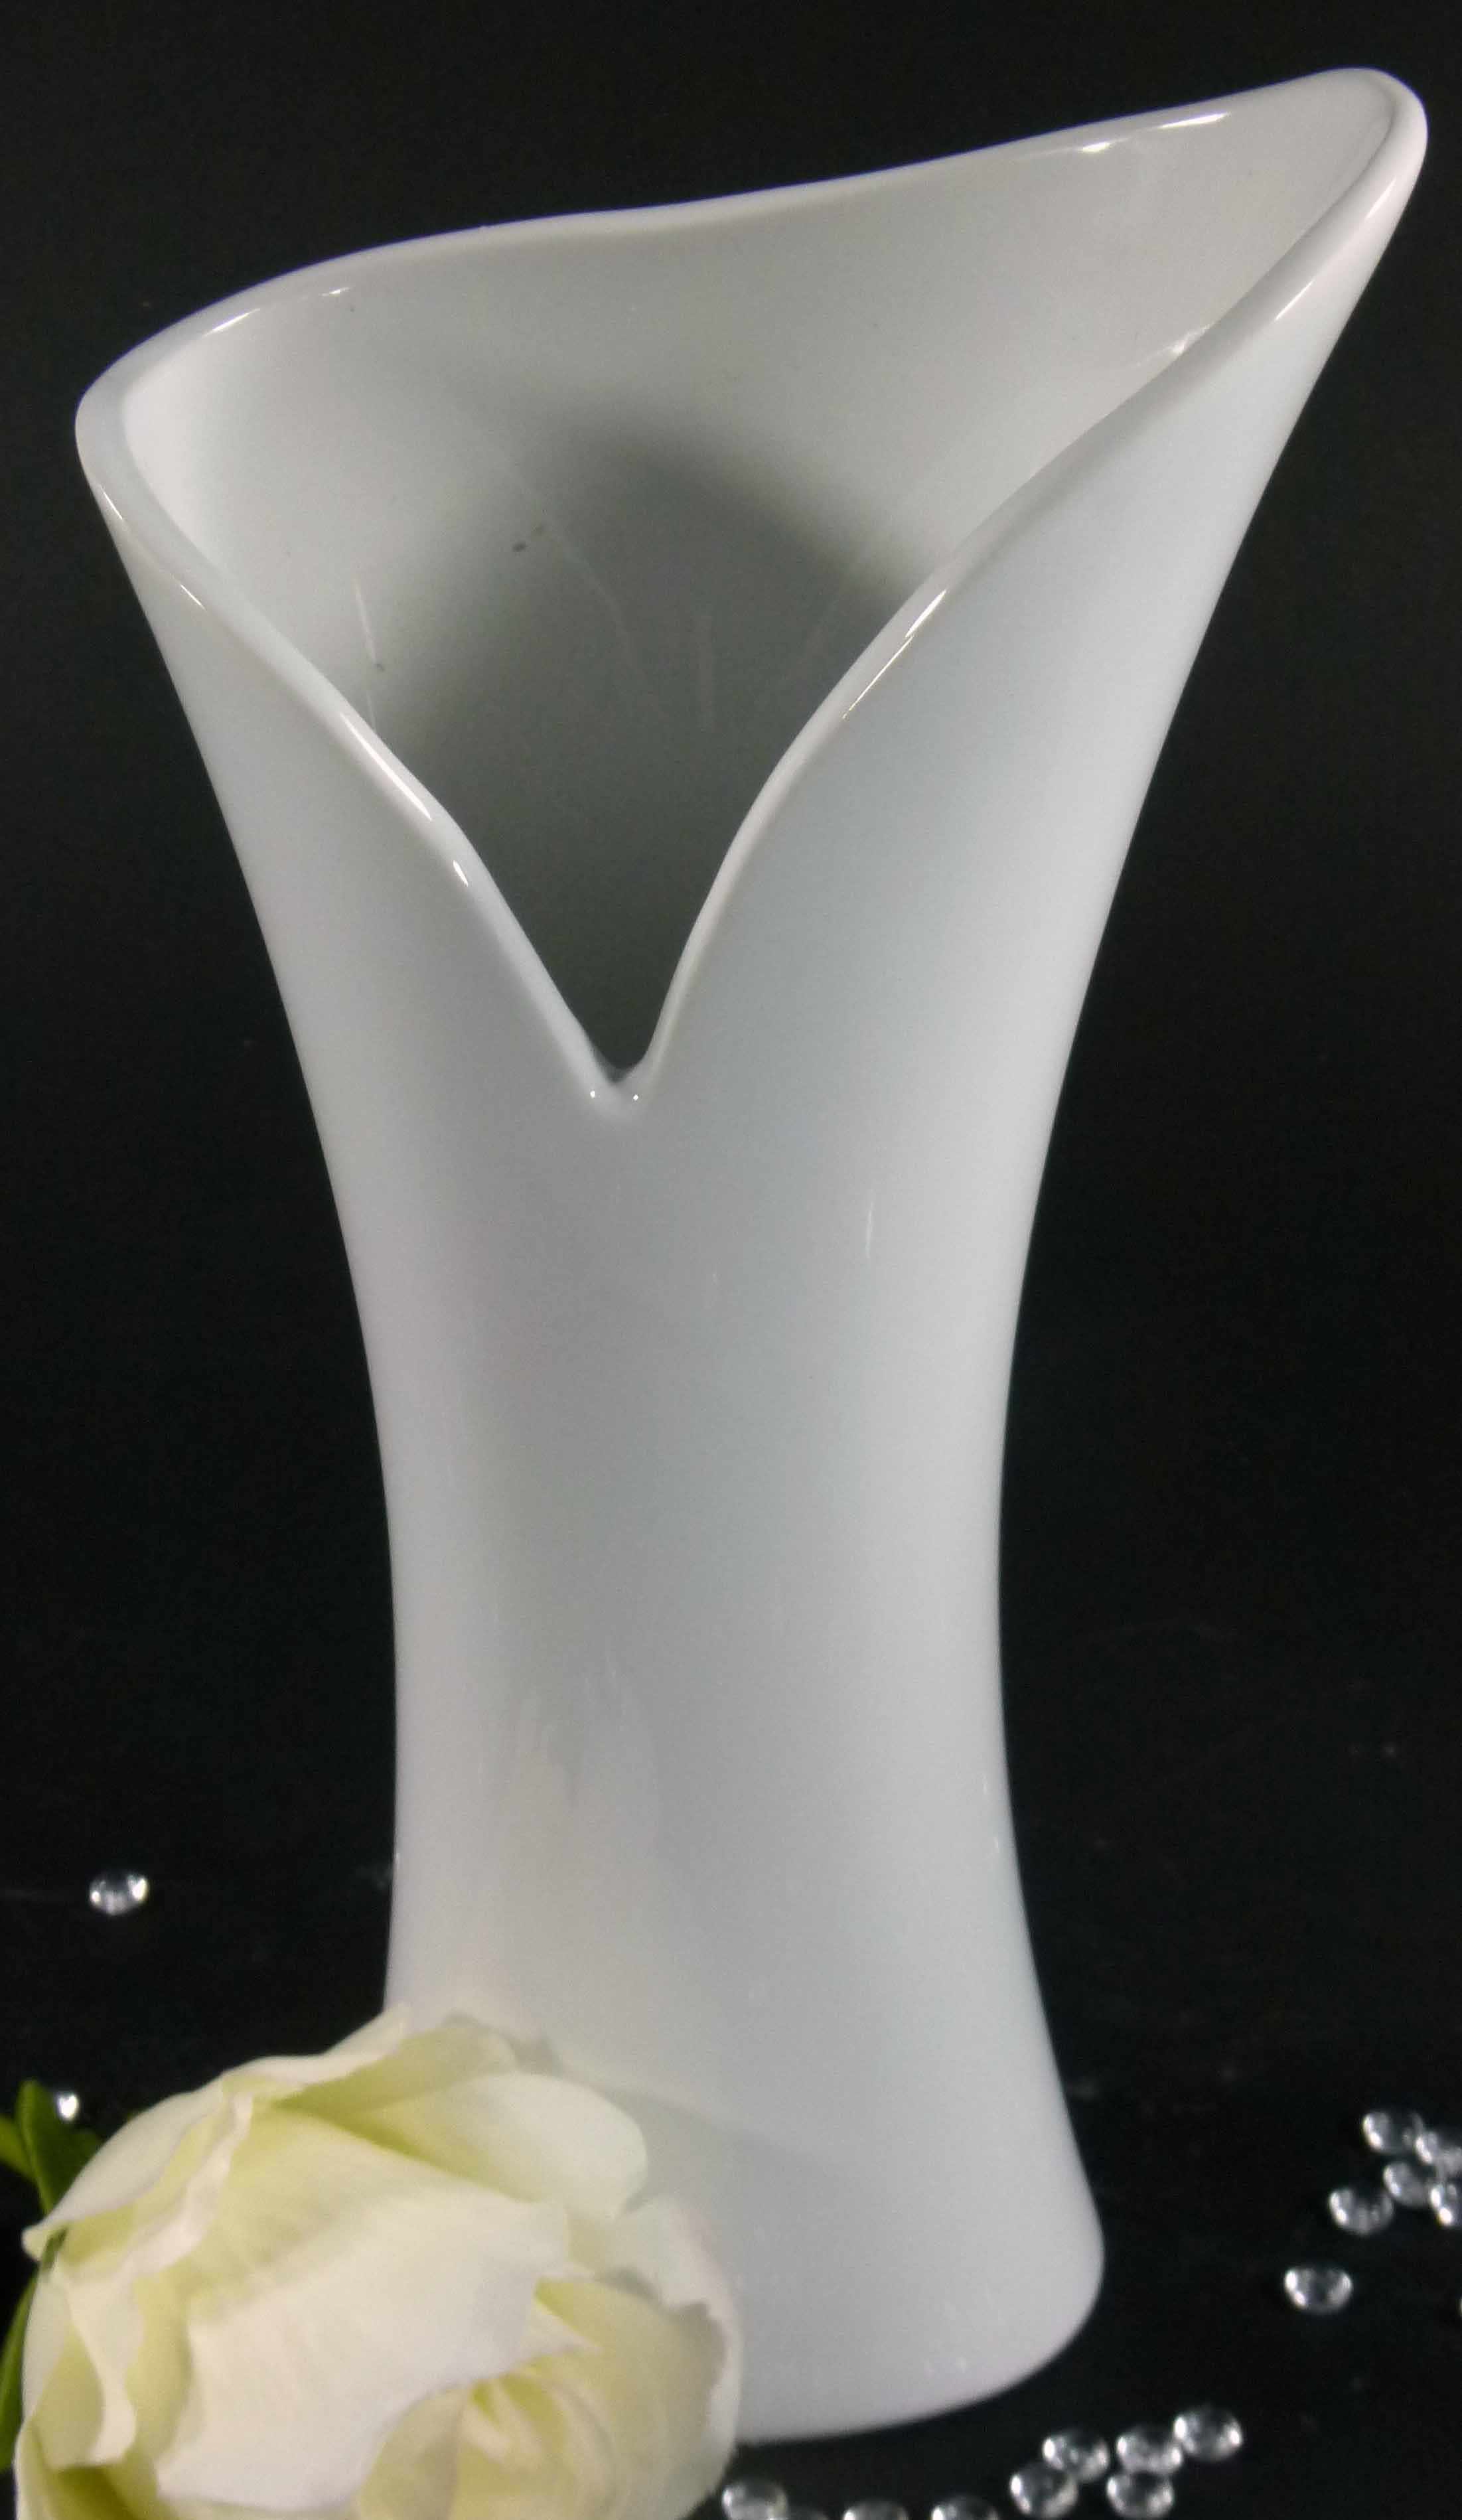 GlasArt Dekovase GlasArt Blumenvase Vase "Pure White" weiß schlicht edel 26cm hoch, Wohnzimmer, Keramik